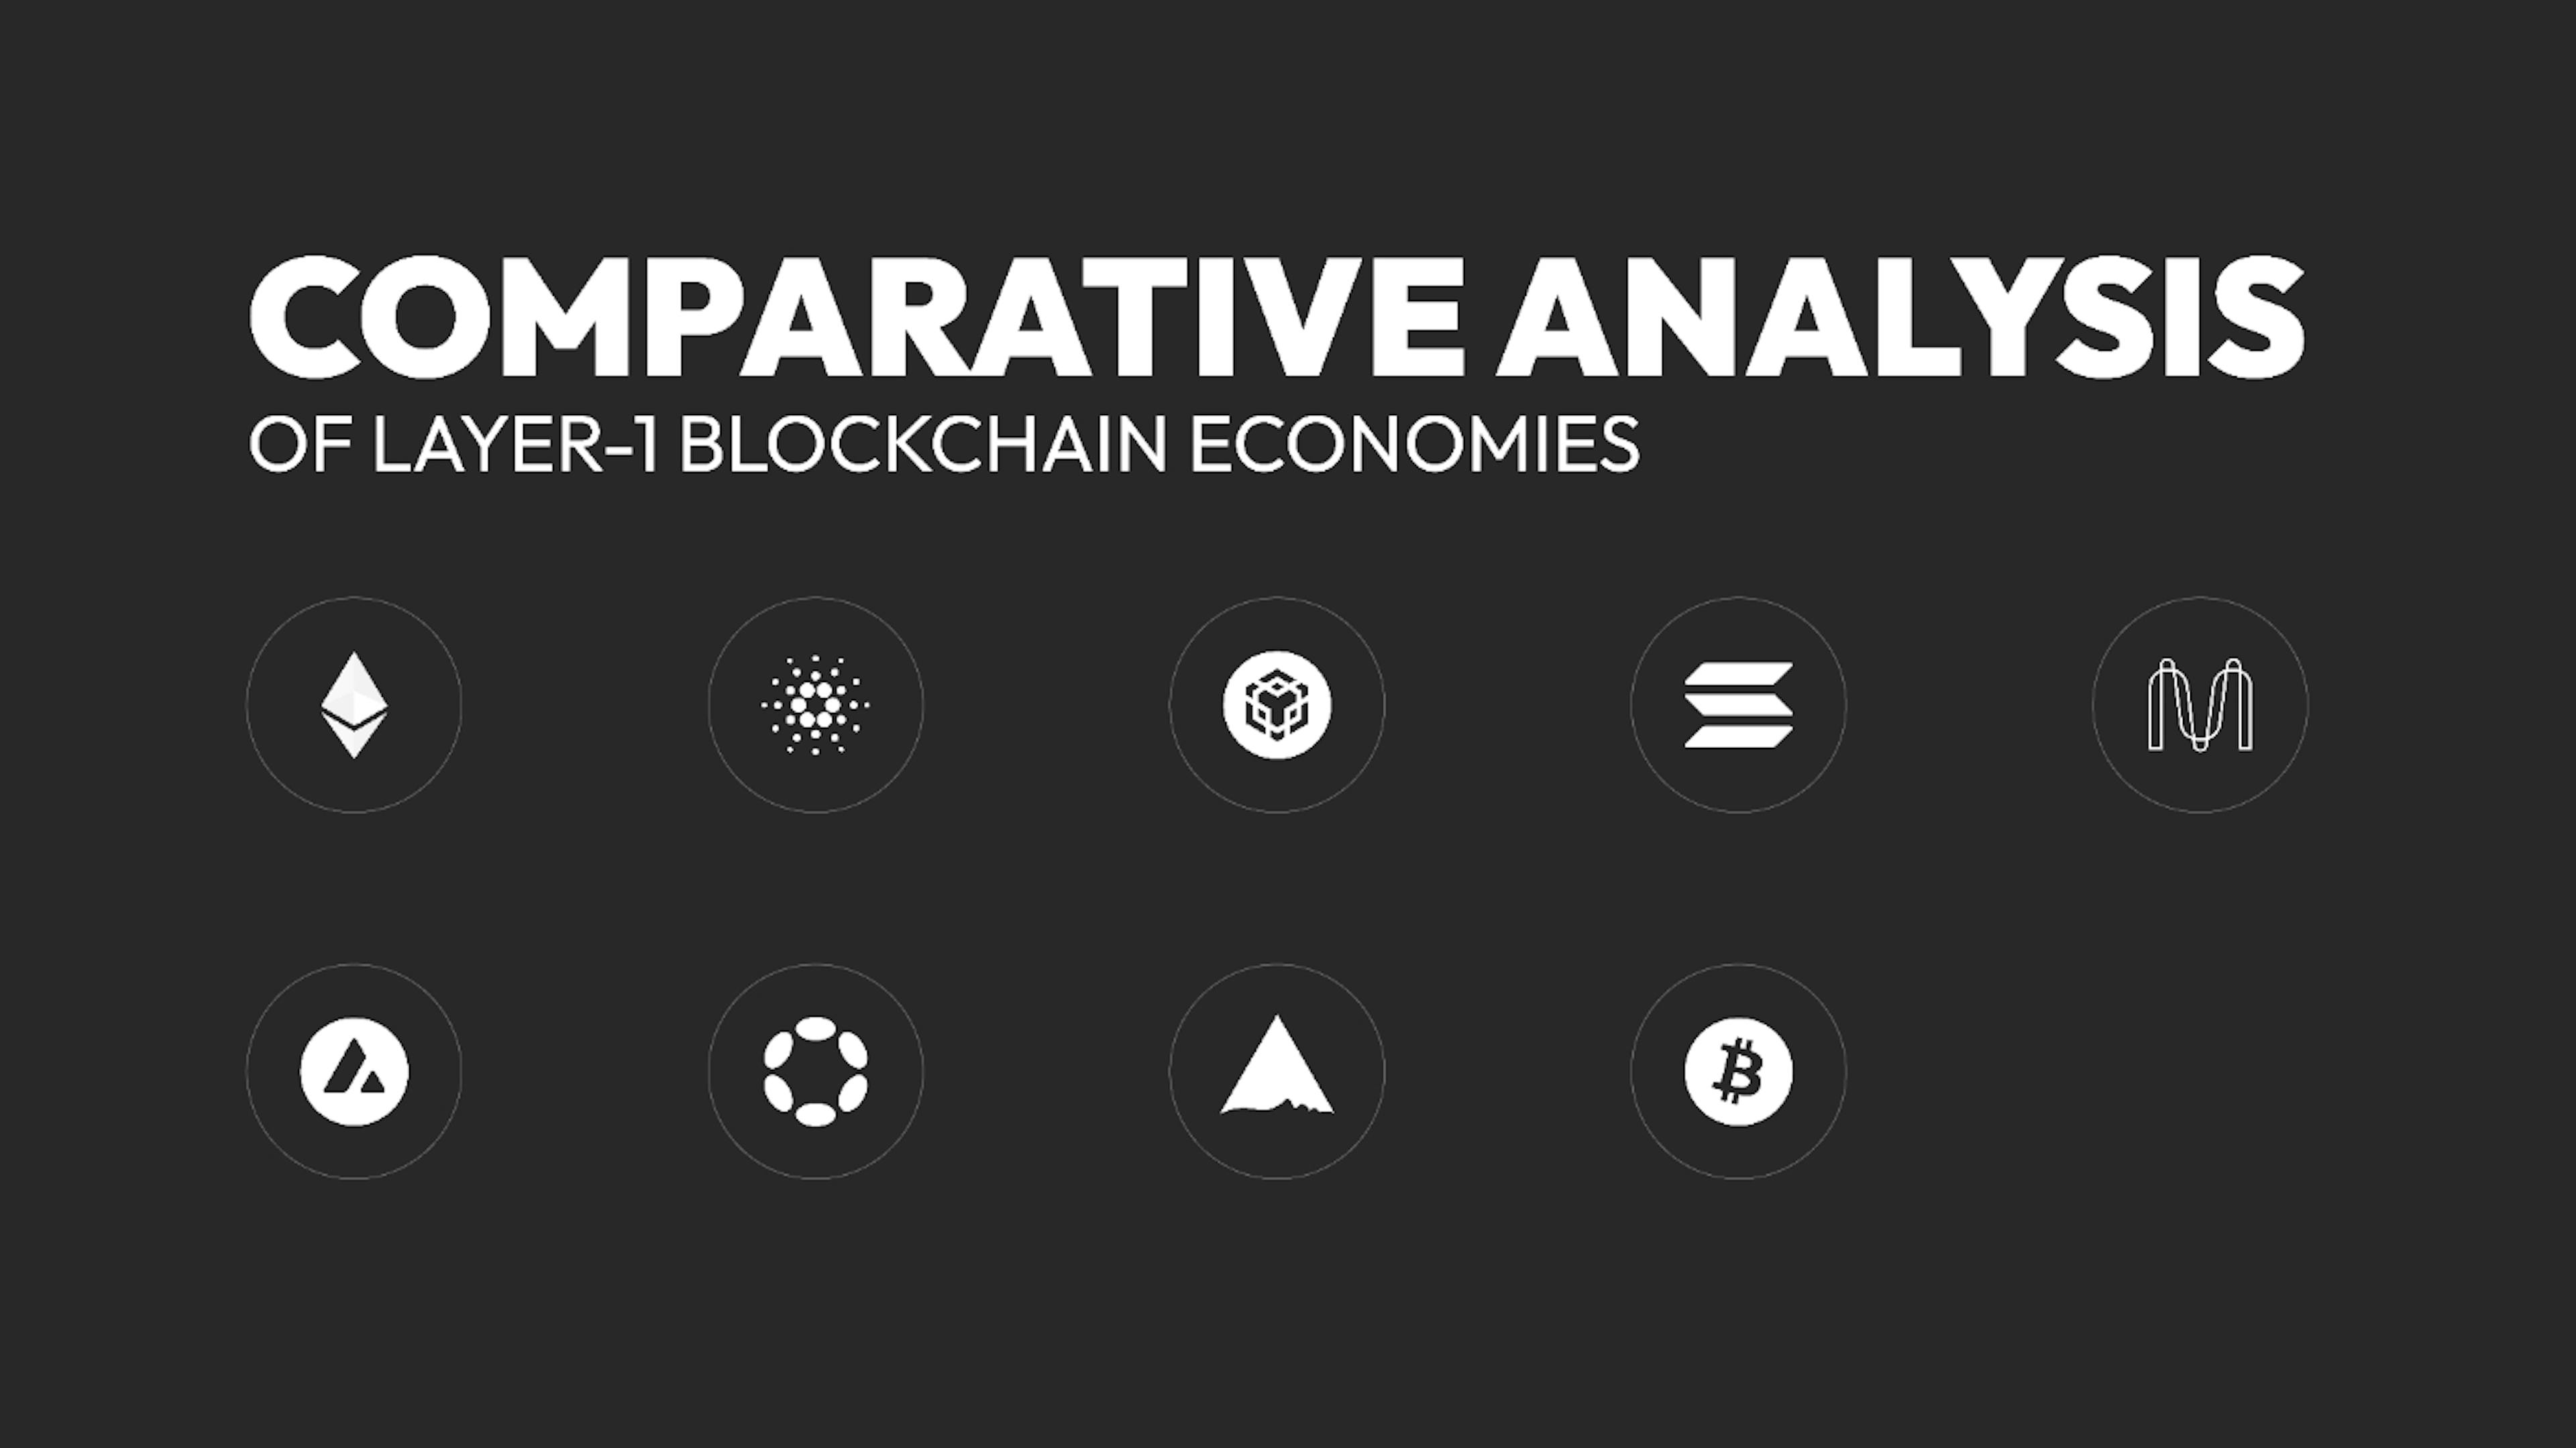 featured image - レイヤー1ブロックチェーン経済の比較分析